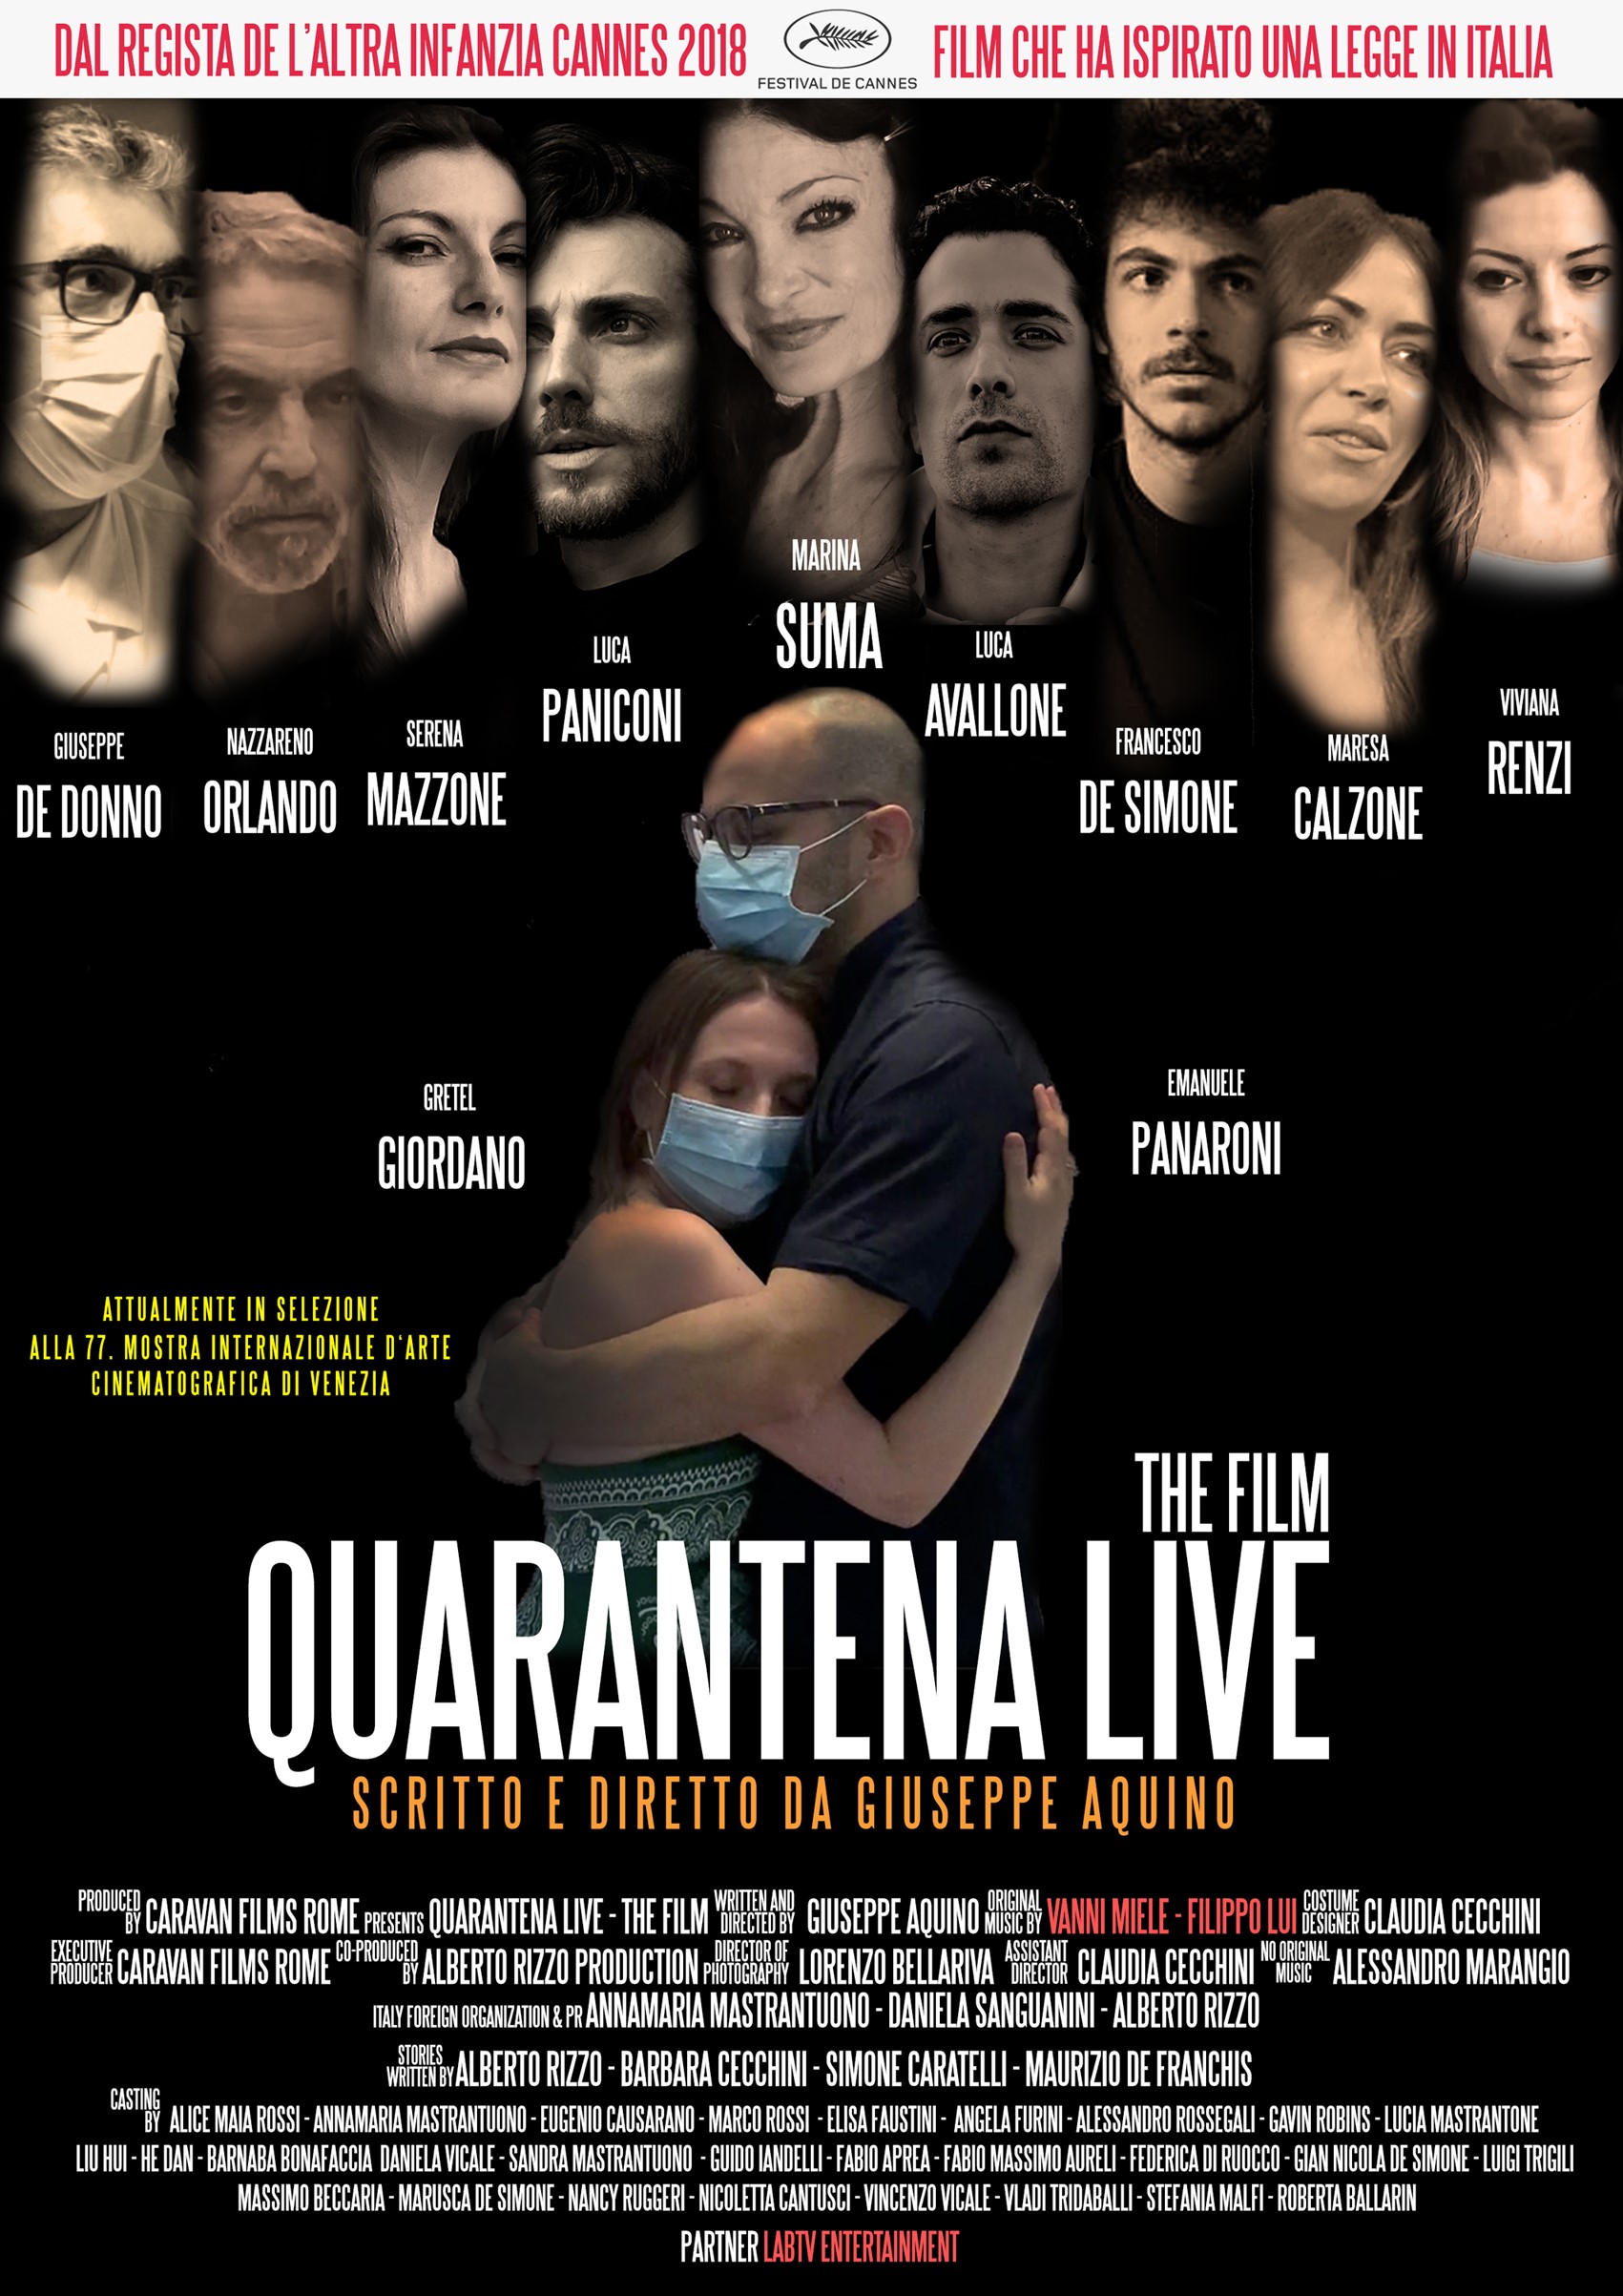 Giuseppe Aquino regista Locandina film Quarantena live the film www.giuseppeaquino.com www.caravanfilmsrome.it